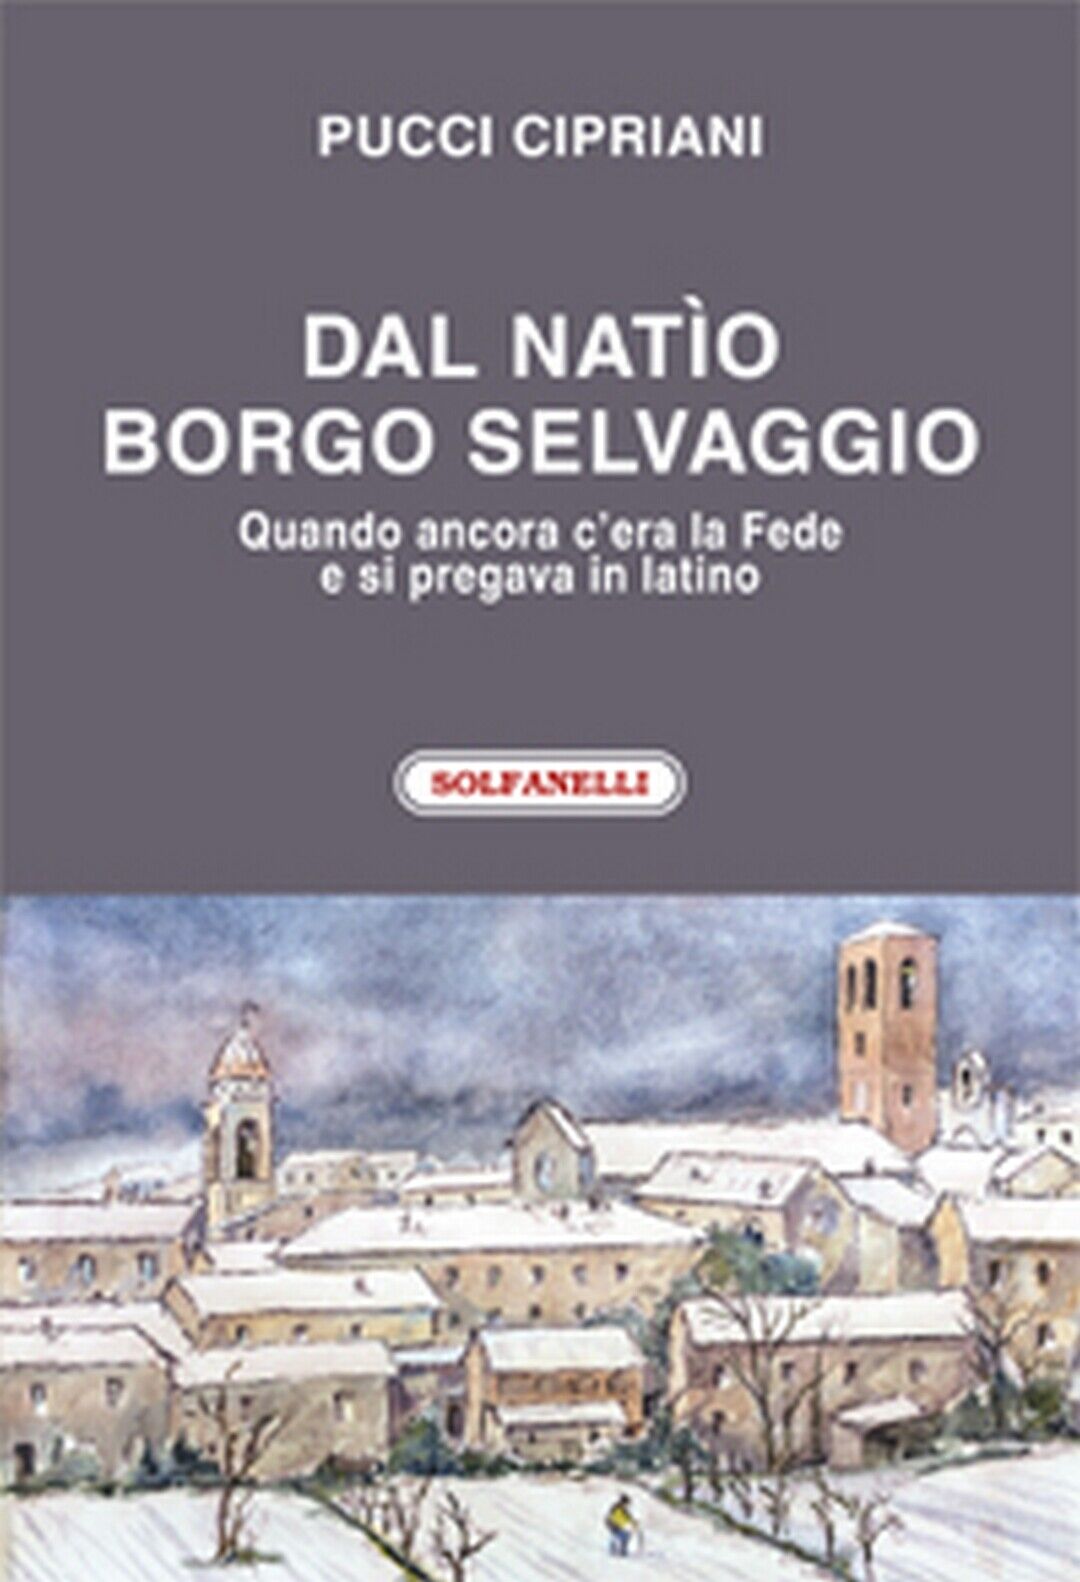 DAL NATIO BORGO SELVAGGIO  di Pucci Cipriani,  Solfanelli Edizioni